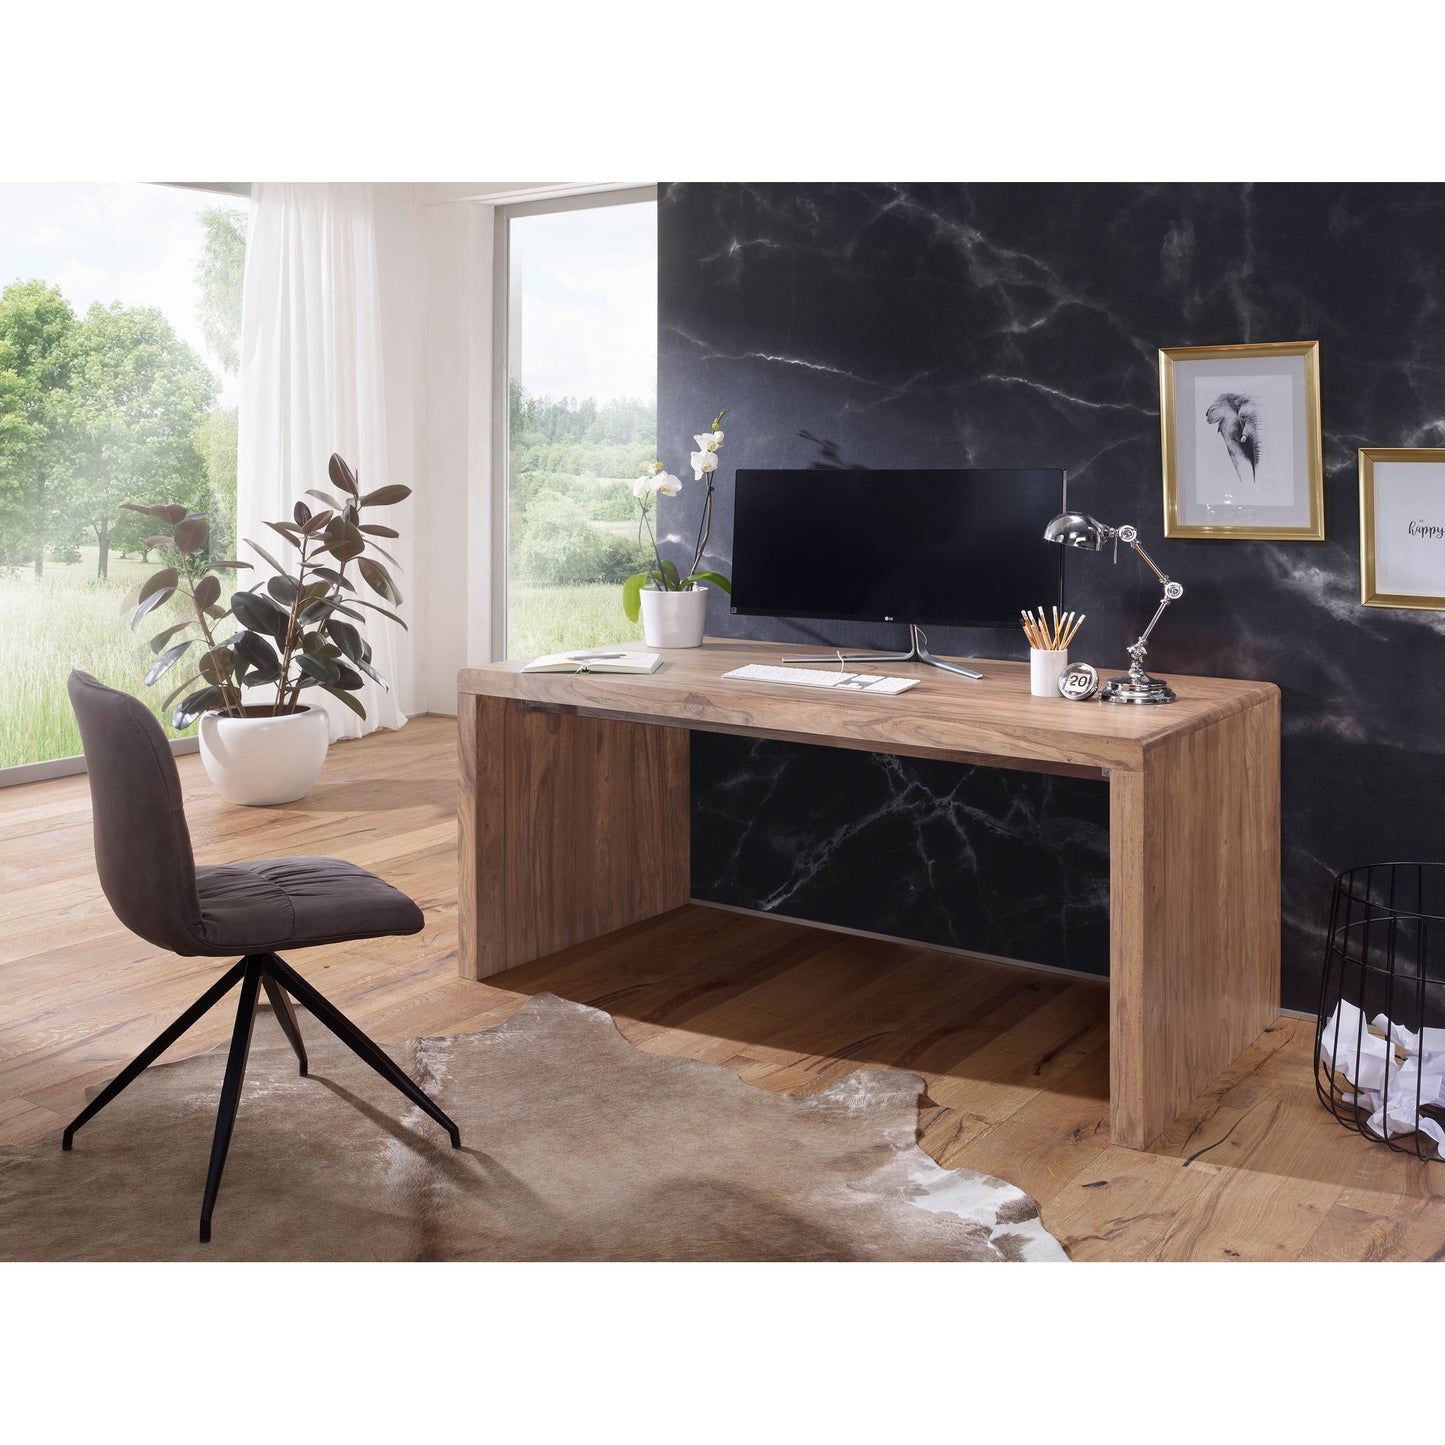 Nancy's Idabel Bureau - Table de travail - Acacia massif - Bois - 140/160 x 80 x 76 cm - Table de bureau - Marron 